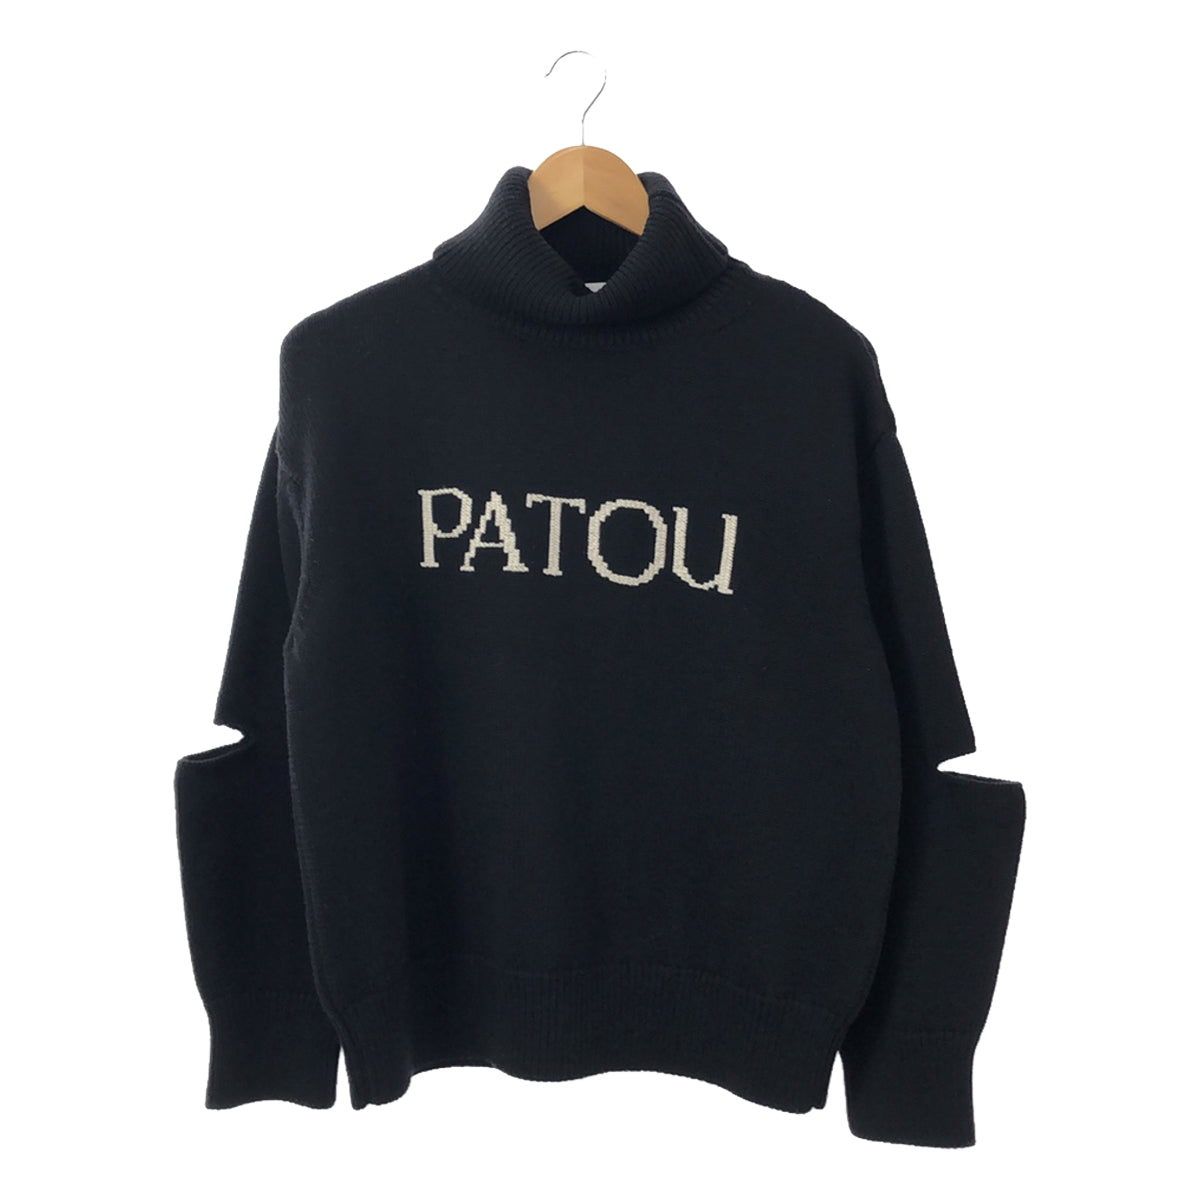 PATOU / パトゥ | カットアウト ロゴ タートルネックニット | S 